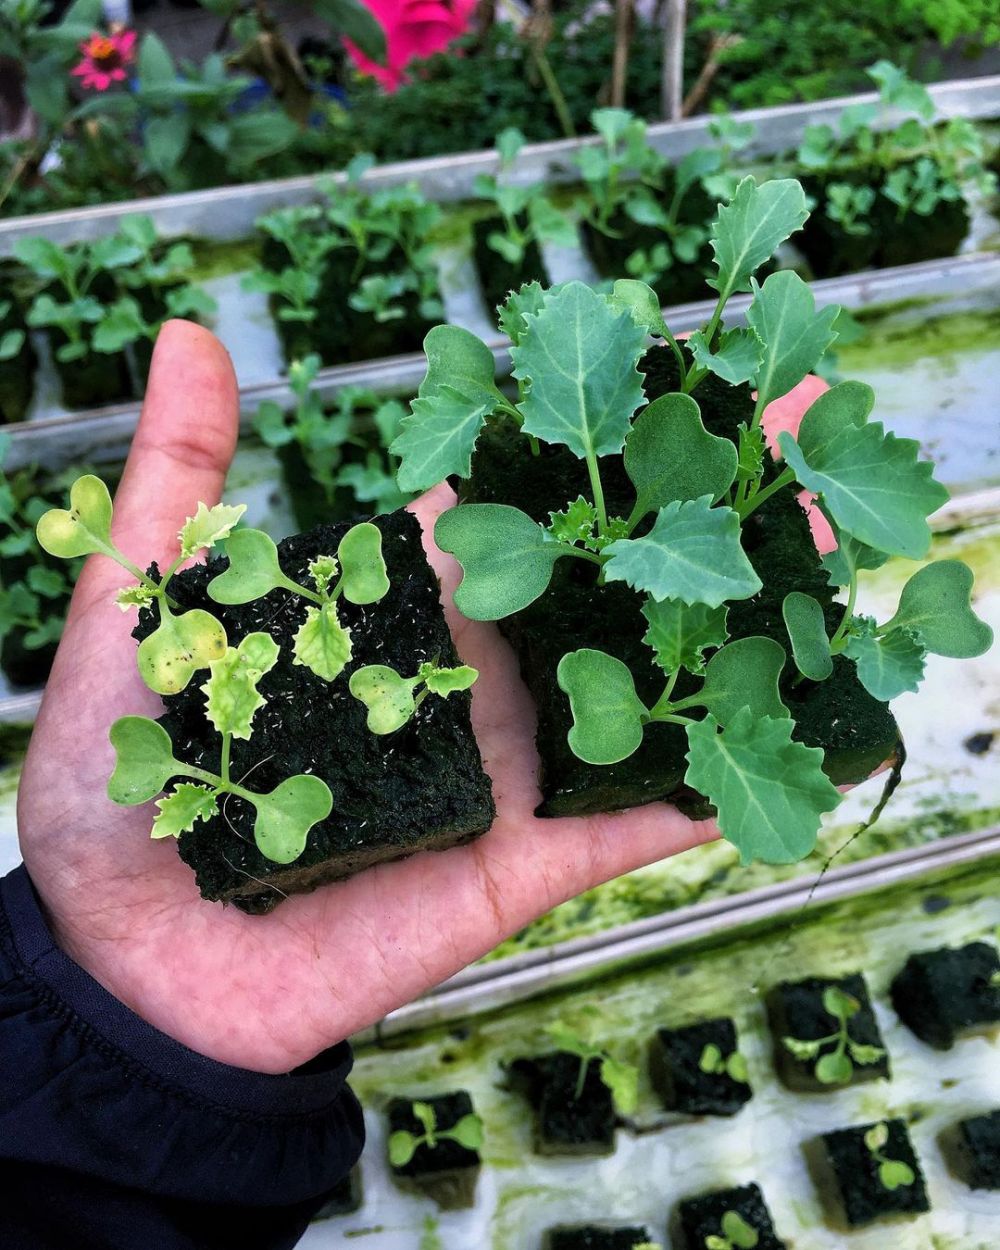 Cara menanam hidroponik kale, dari pembibitan hingga panen